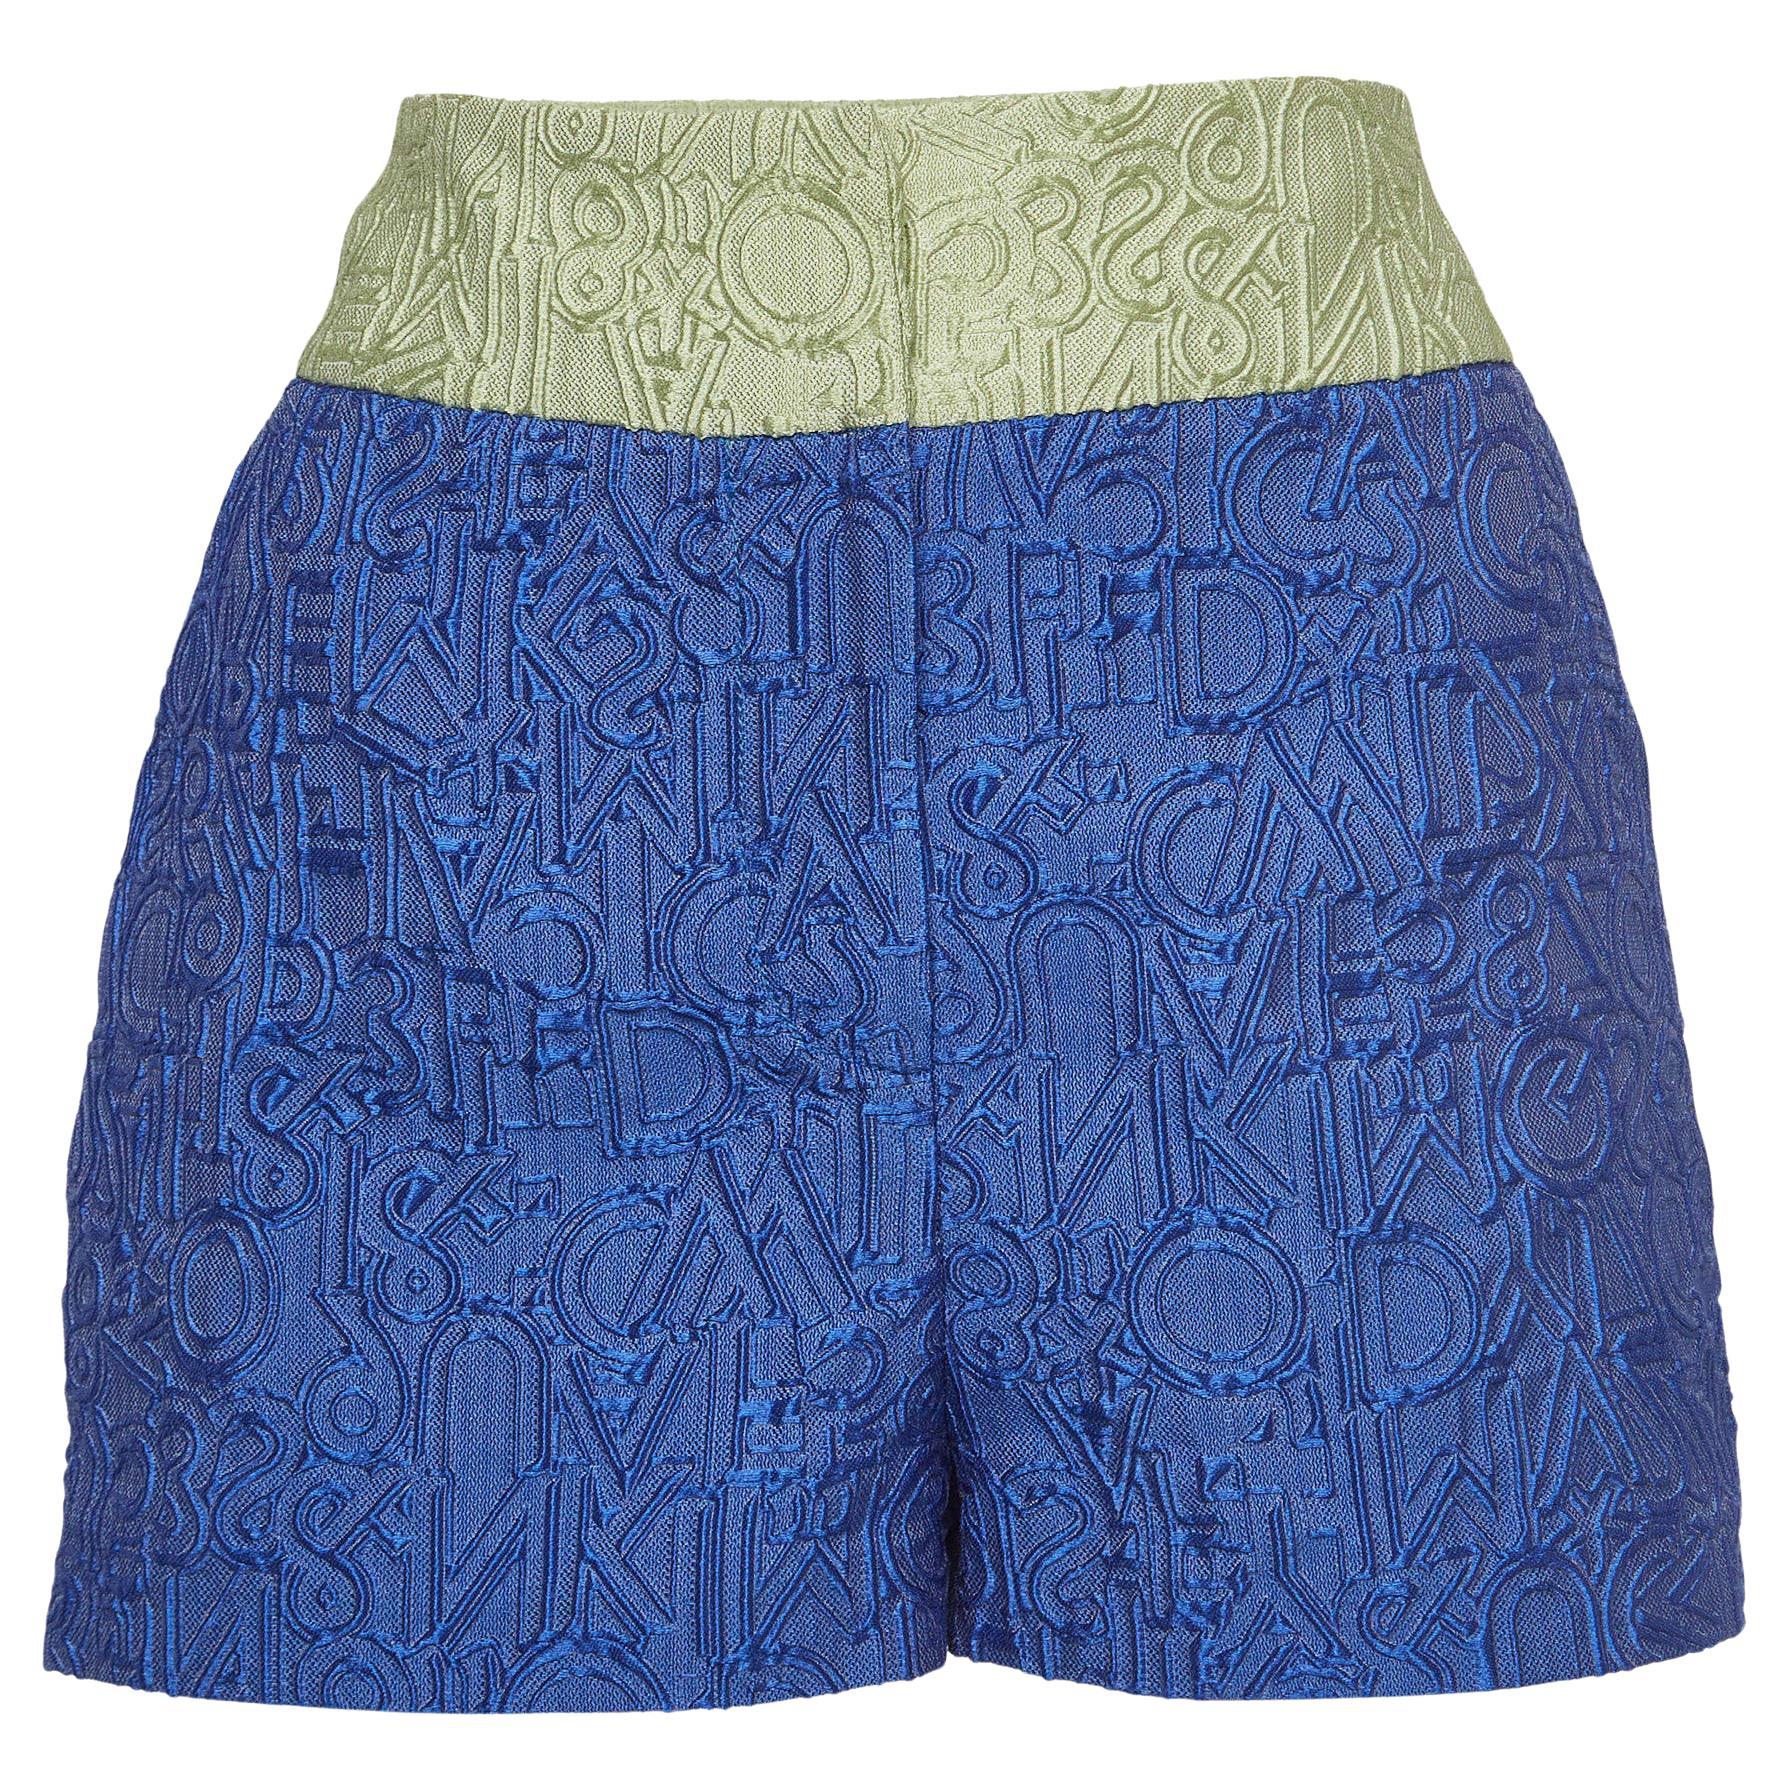 Mary Katrantzou Blue/Green Colorblock Jacquard Safari Shorts M For Sale